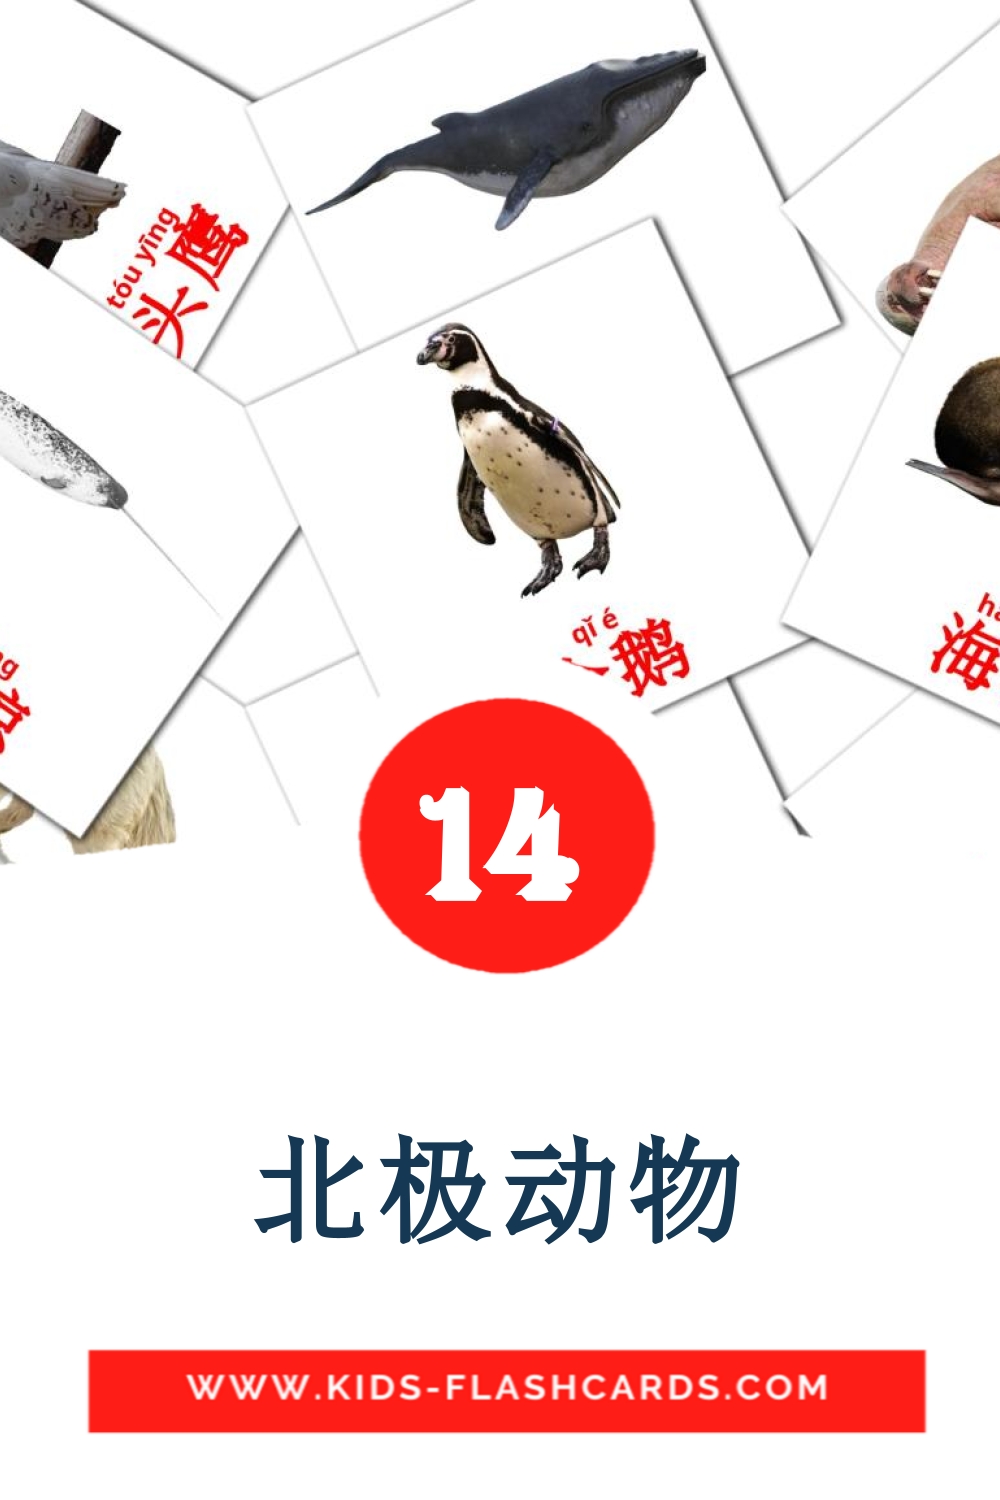 14 tarjetas didacticas de 北极动物 para el jardín de infancia en chino(simplificado)